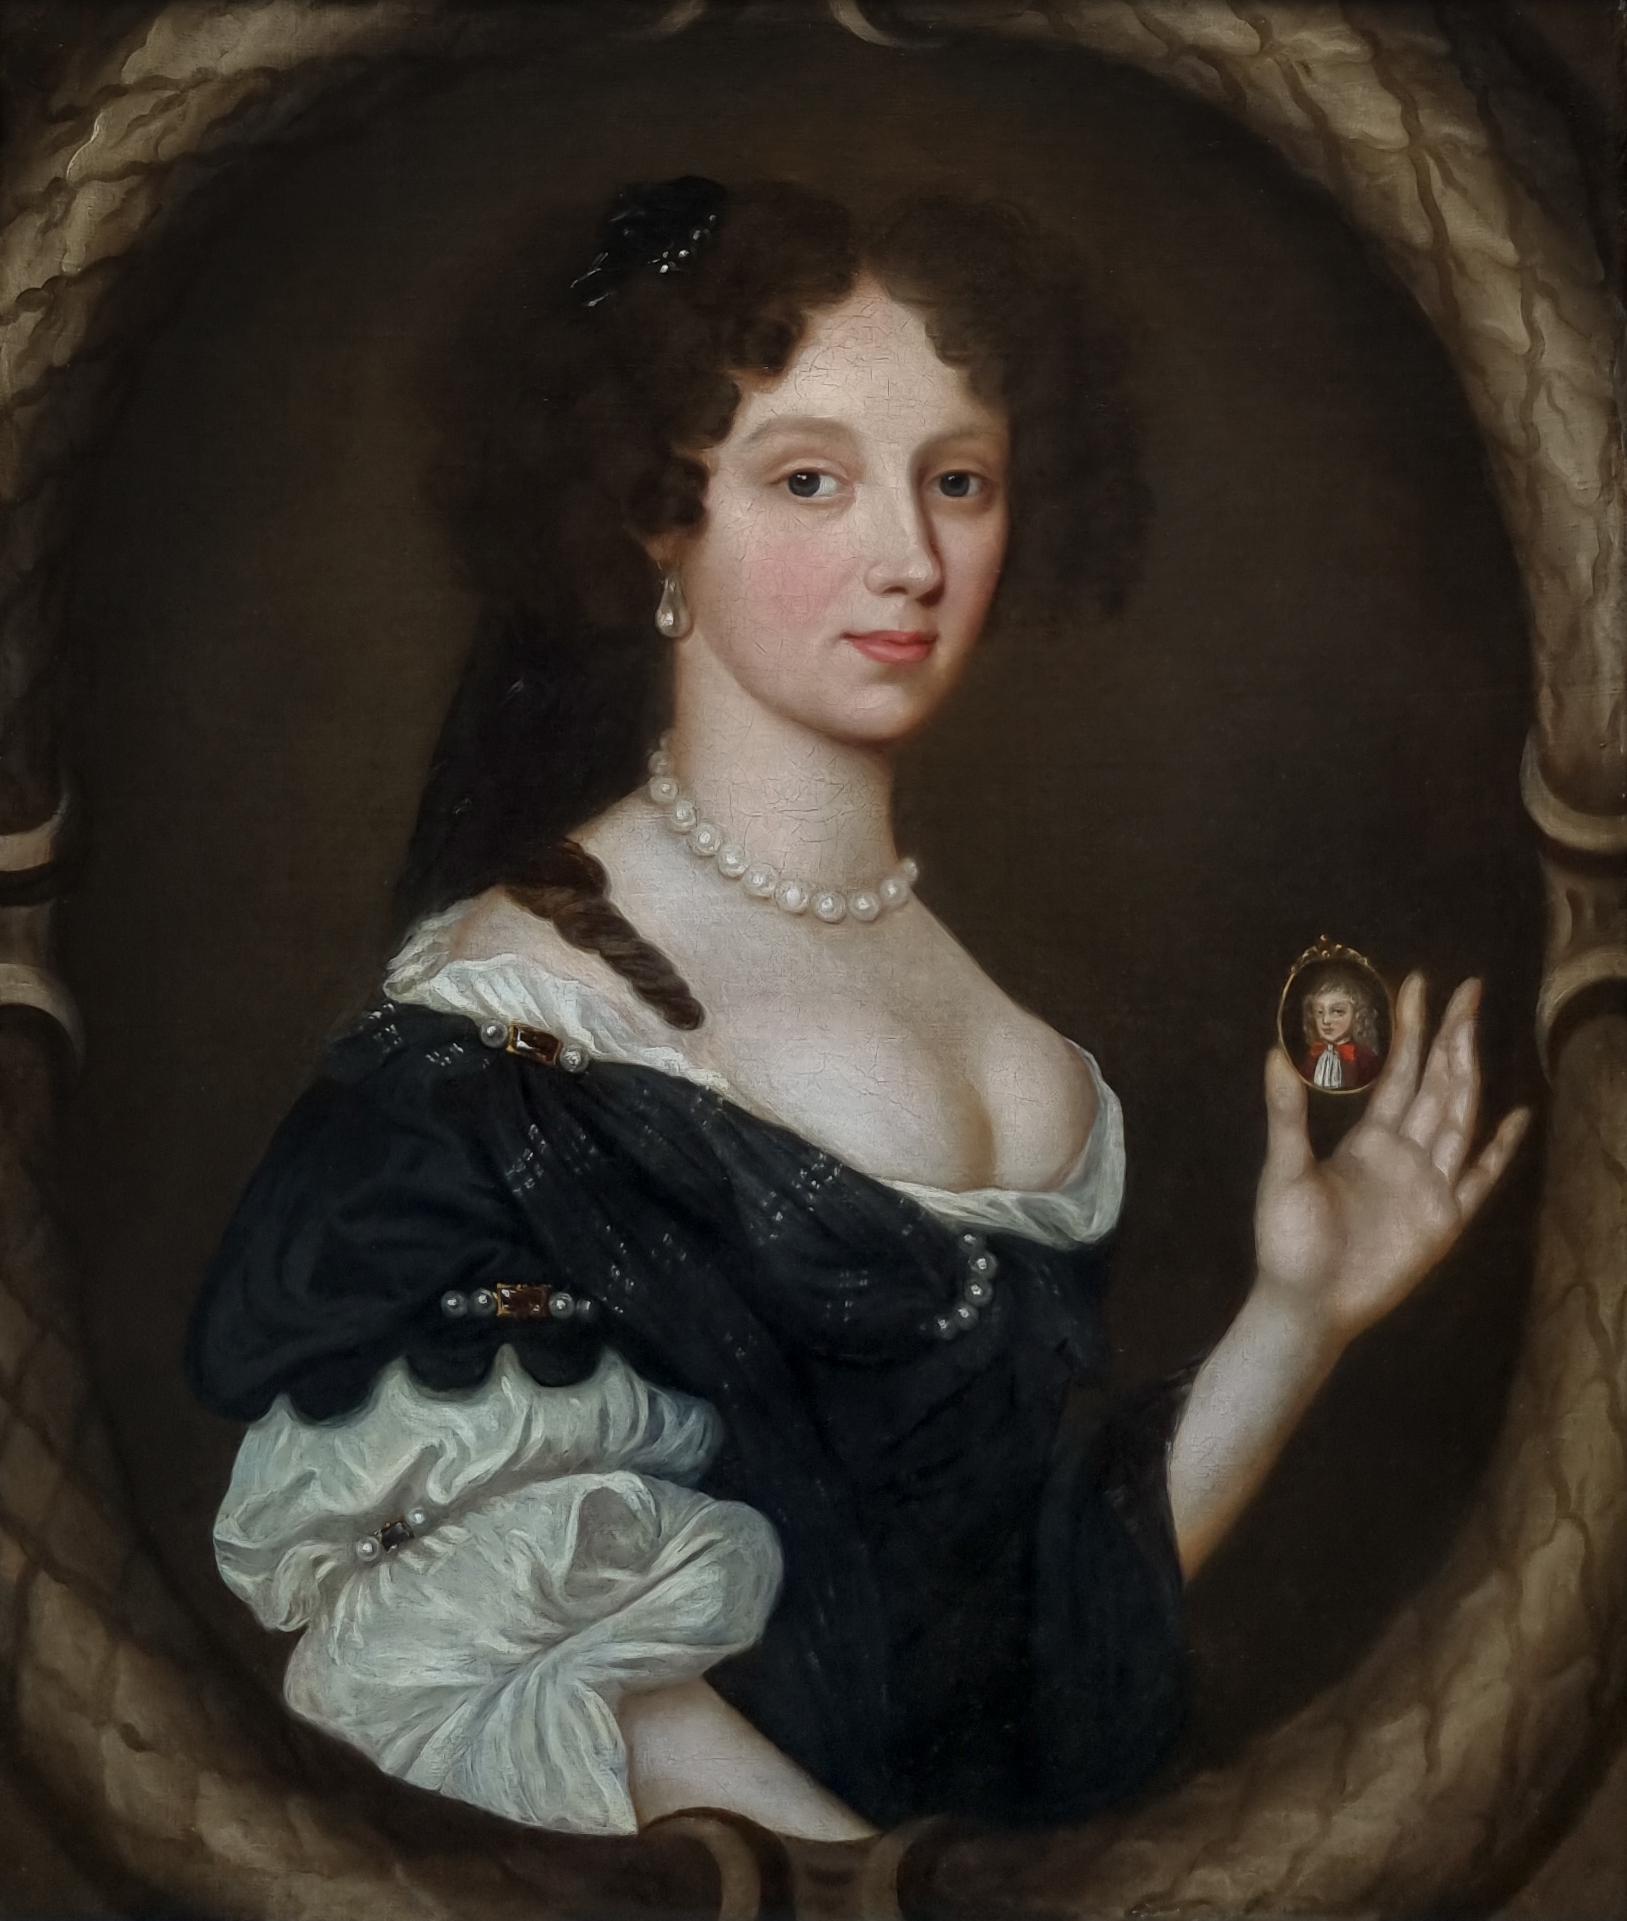 In dieser rührenden Komposition ist eine junge Frau dargestellt, die ein dunkles Kleid trägt, das am Mieder mit einem hauchdünnen Seidenschal drapiert und mit Perlen und großen Diamanten besetzt ist, darüber ein weißes Hemd.  Das Porträt kann anhand